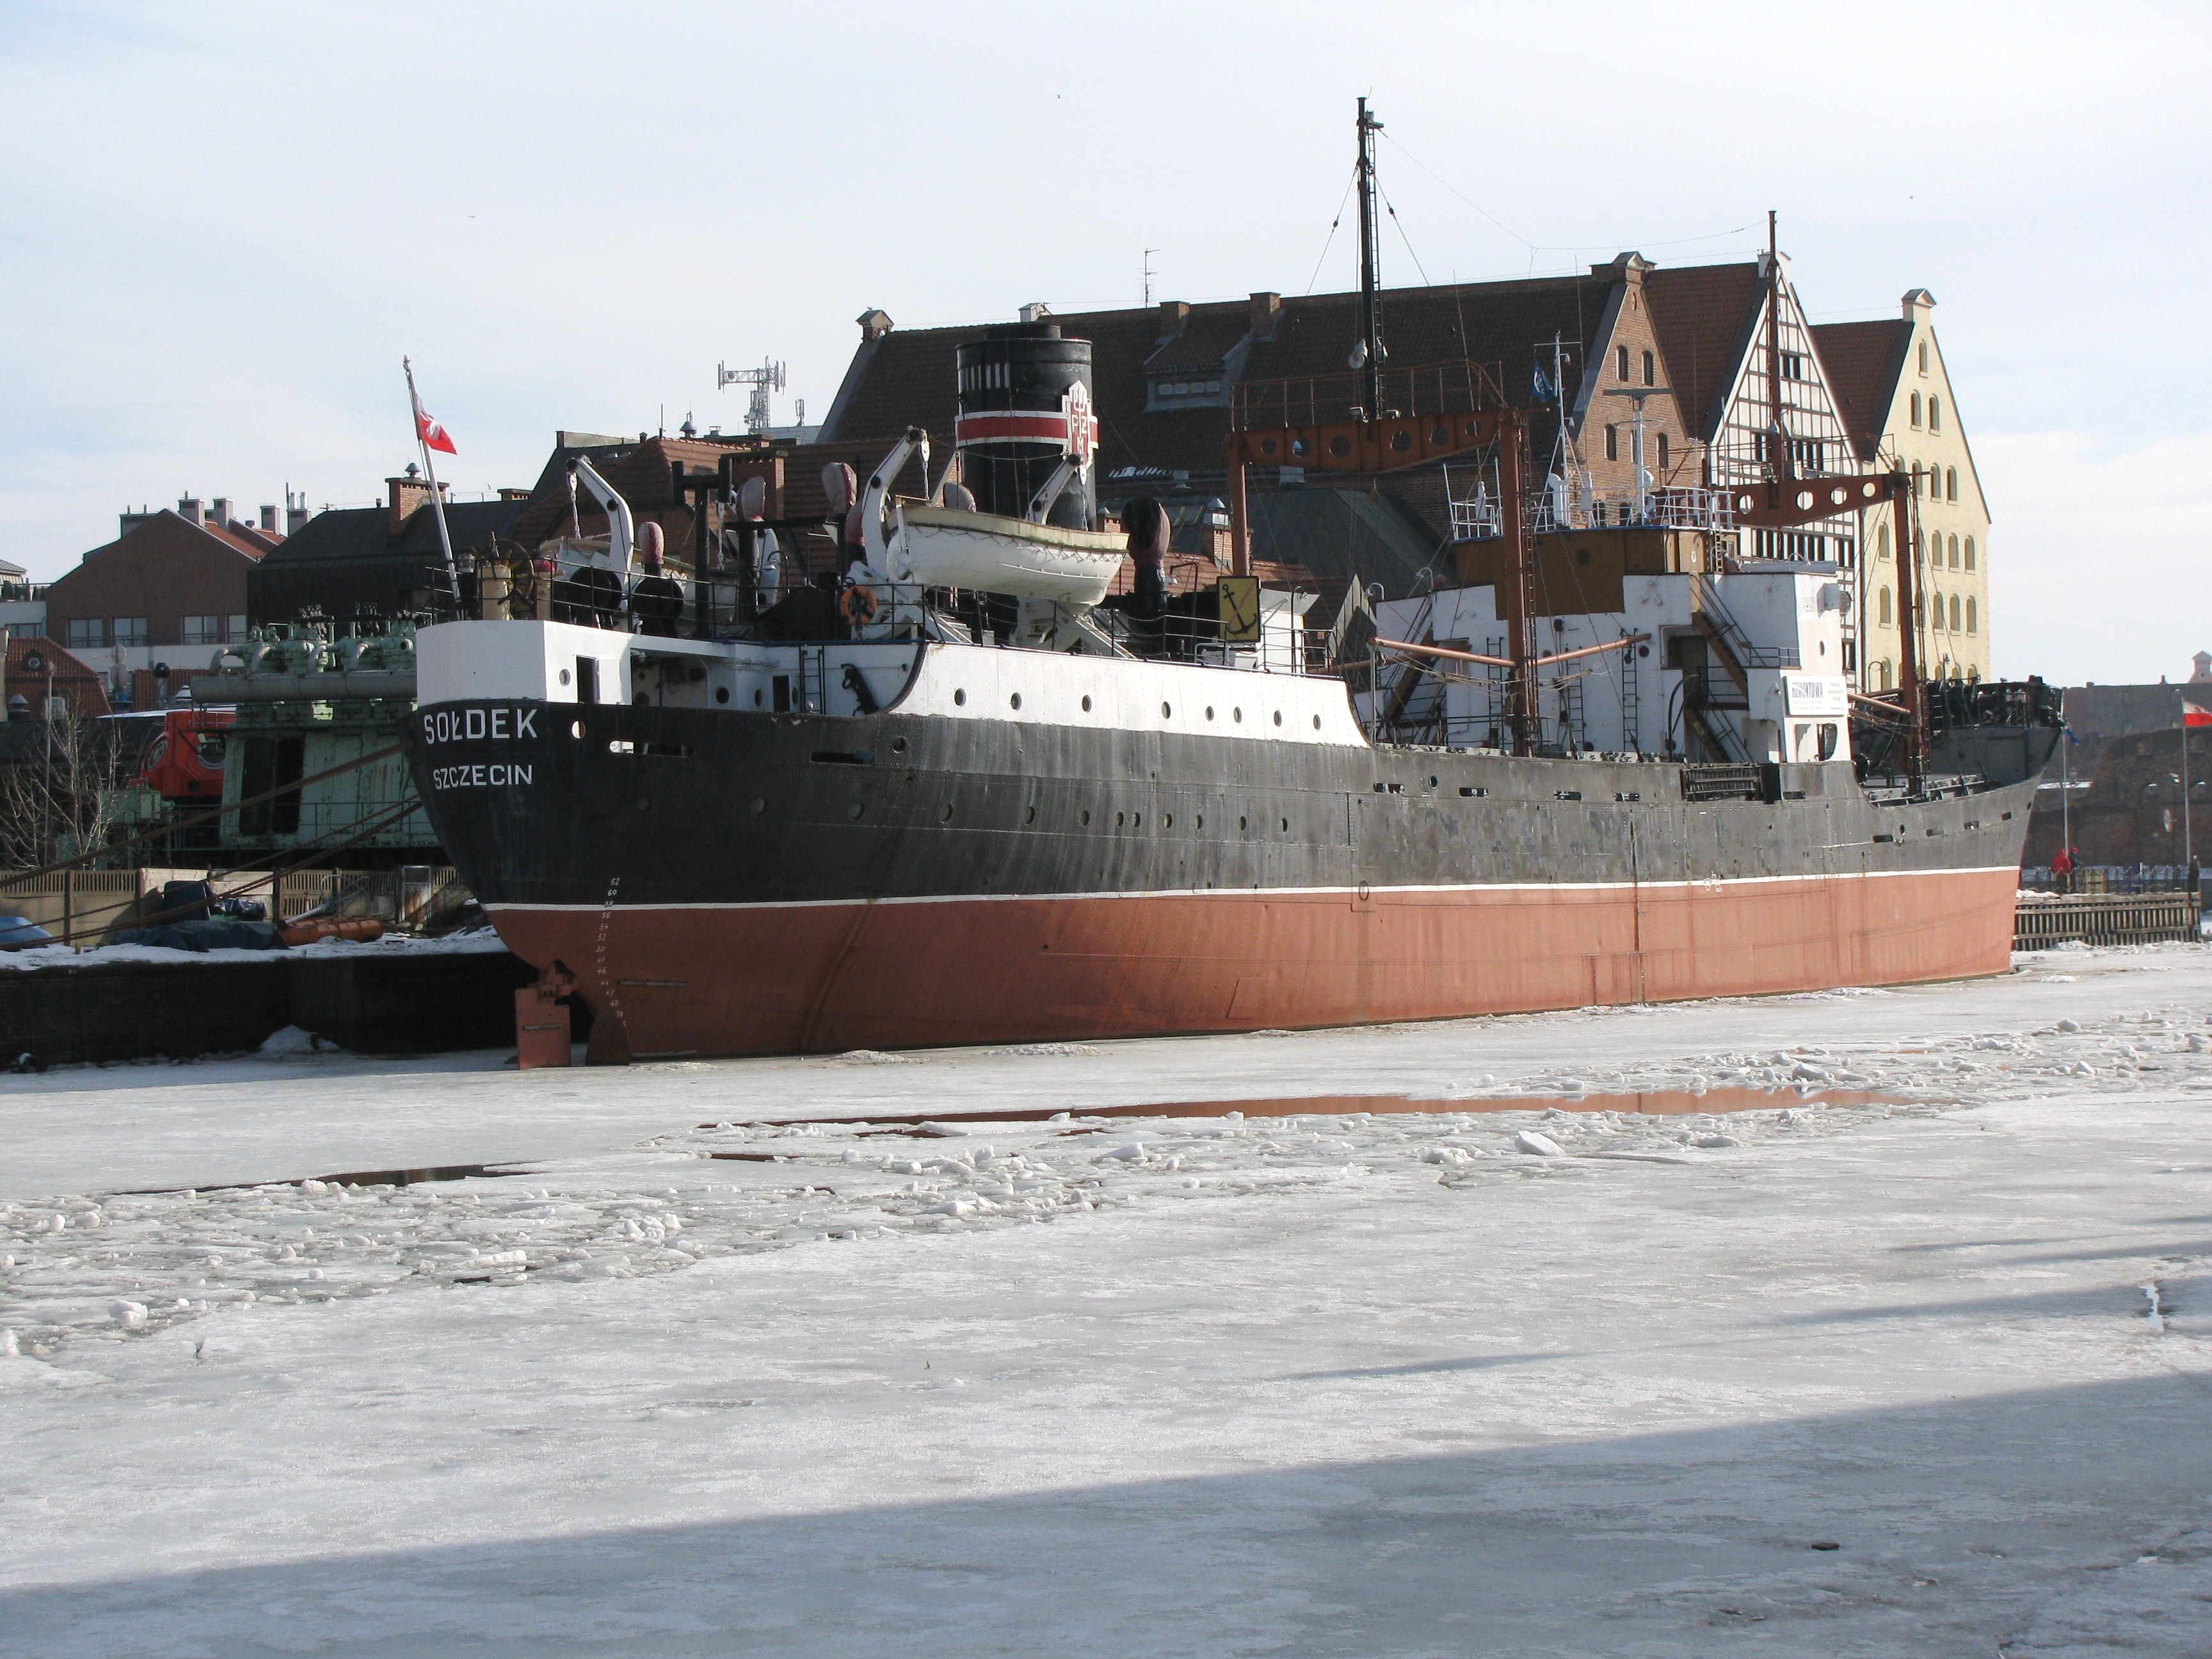 Soldek Gdansk february 2010